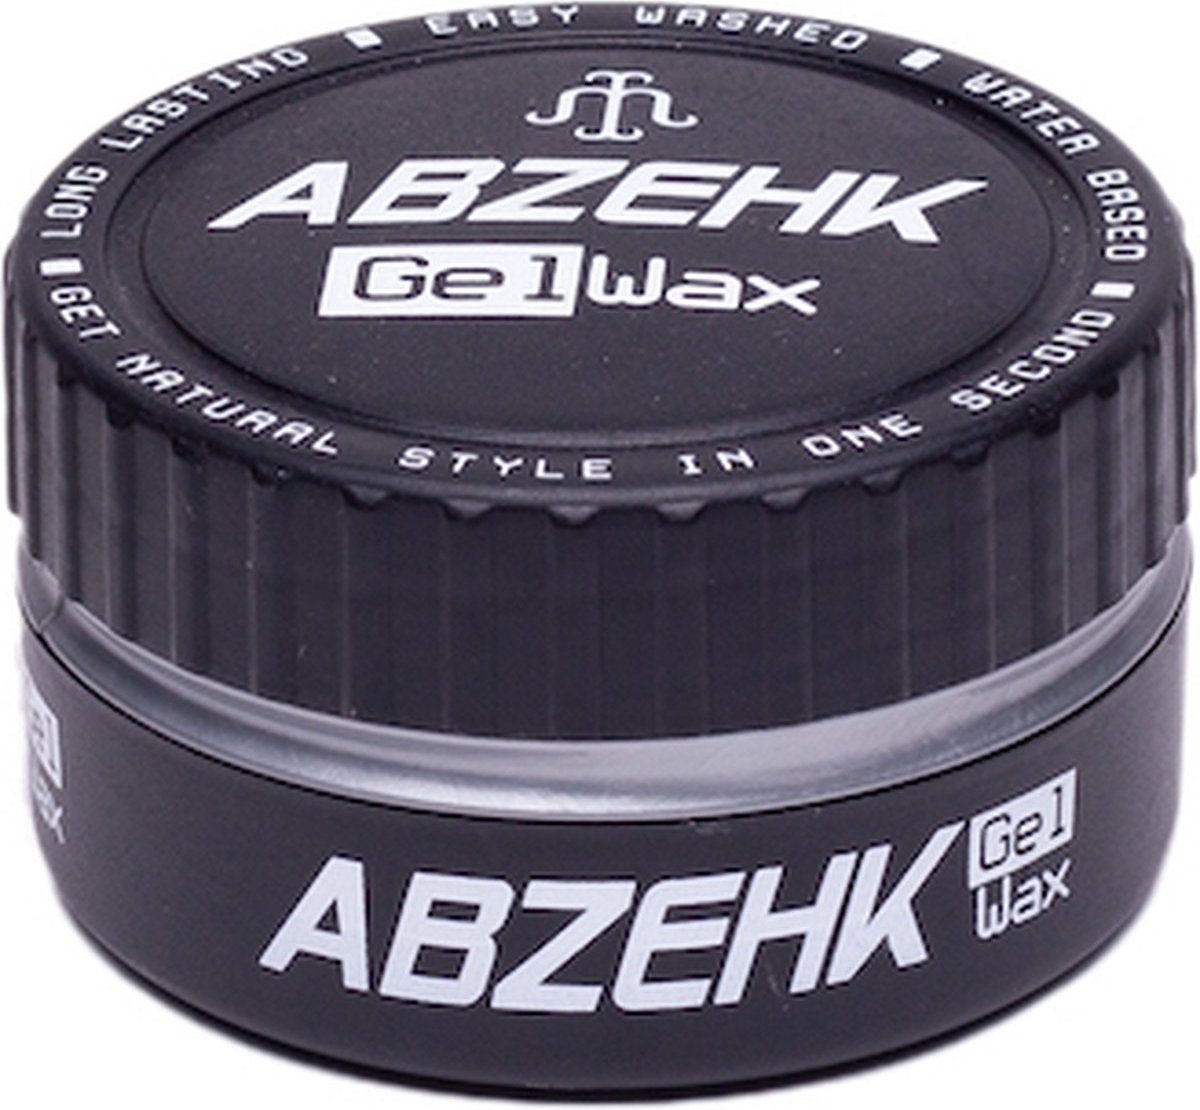 Abzehk Hair Wax Grijs Strong 150ml